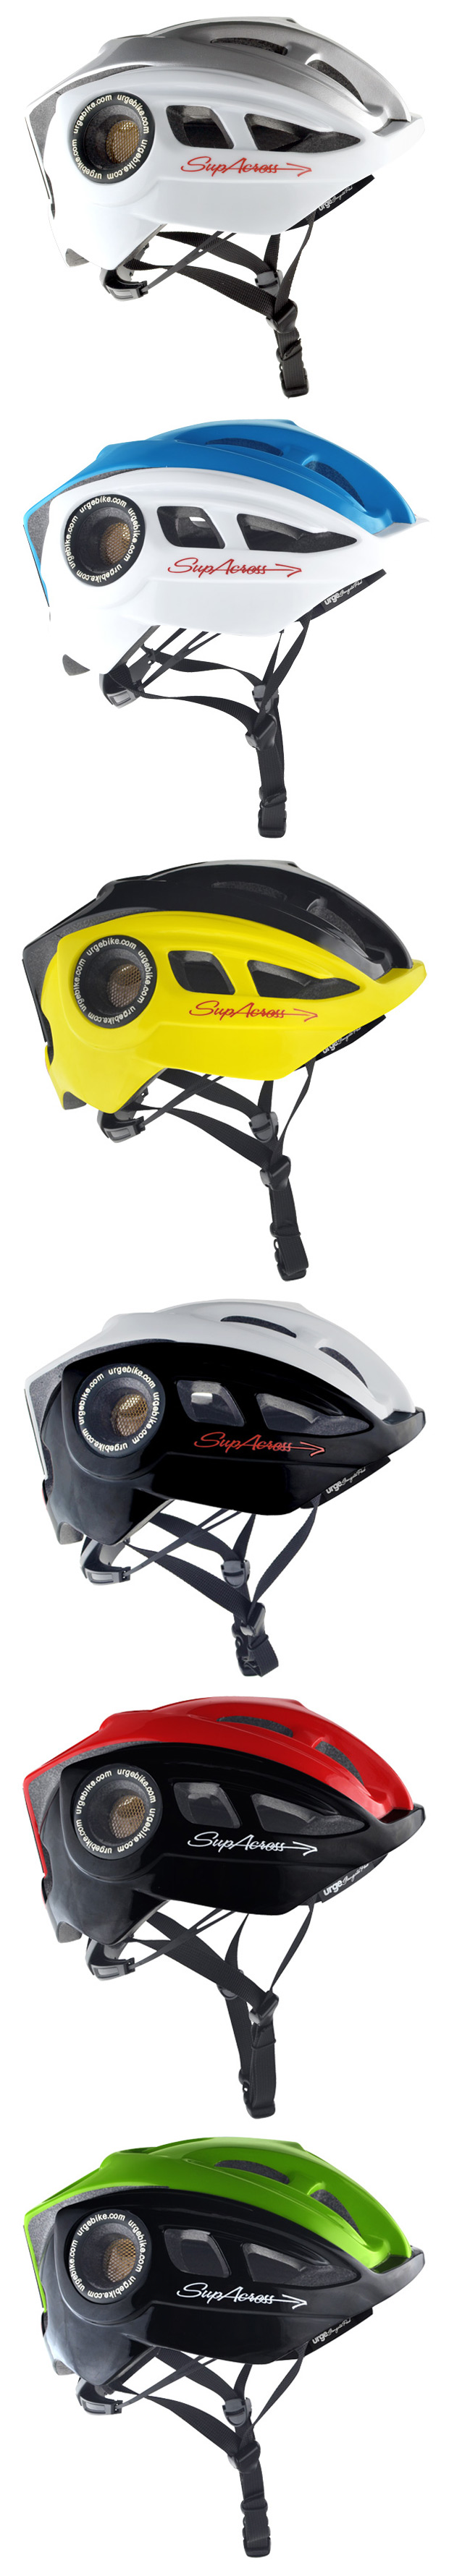 Urge Supacross: El primer (y nuevo) casco orientado al XC de Urge